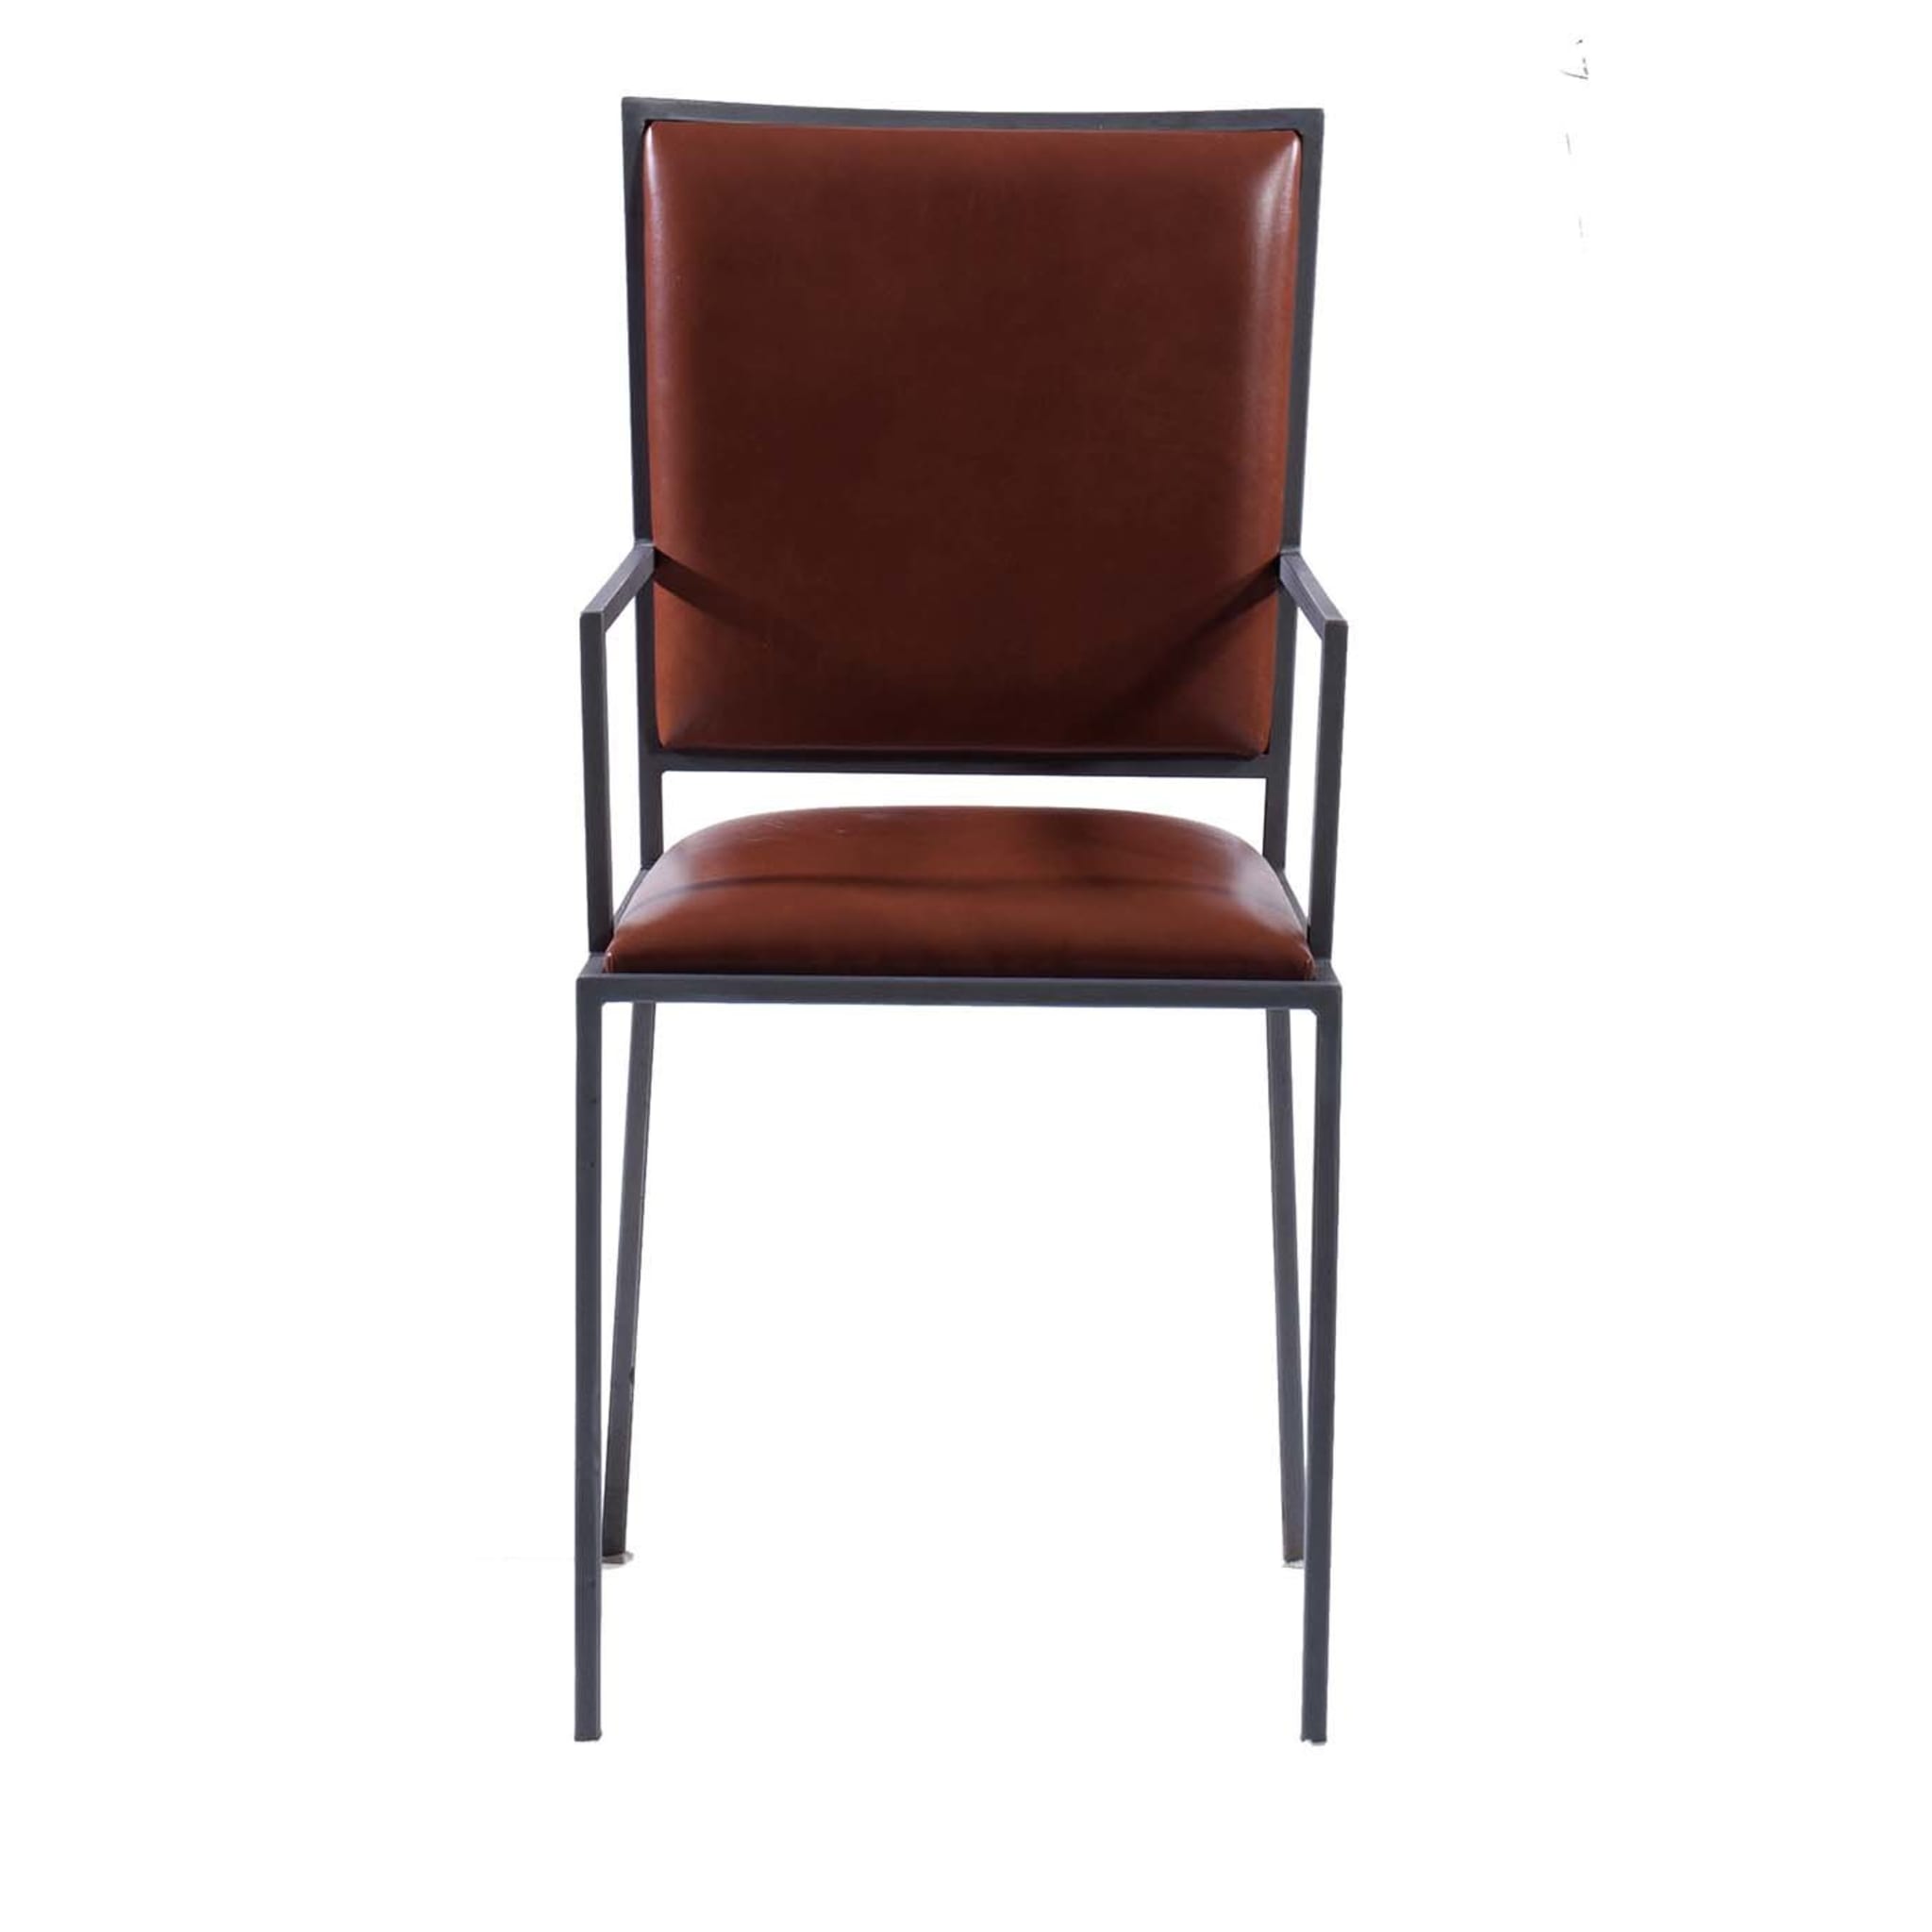 La chaise simple avec accoudoirs en cognac - Vue principale